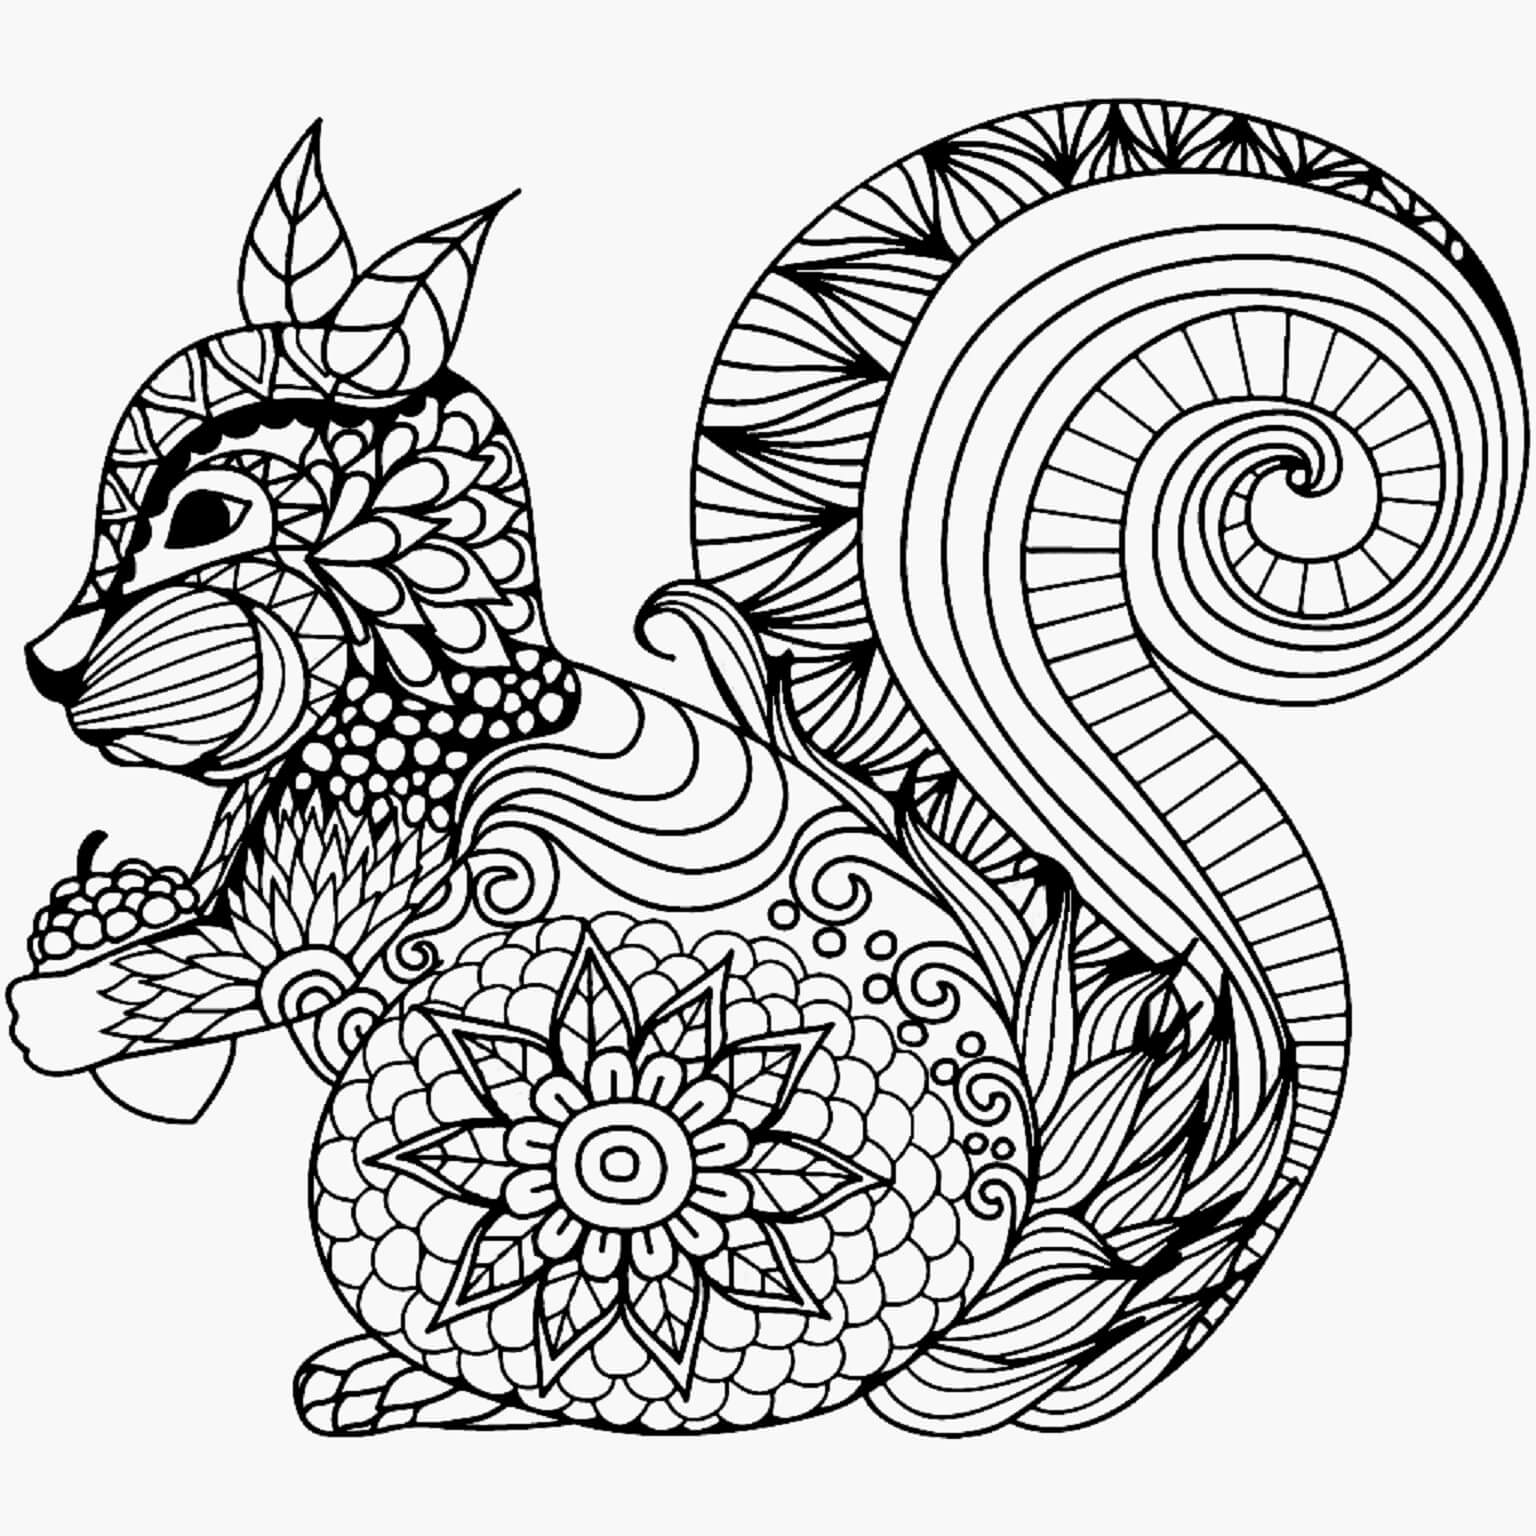 Mandala Squirrel Coloring Page - Sheet 7 Mandalas